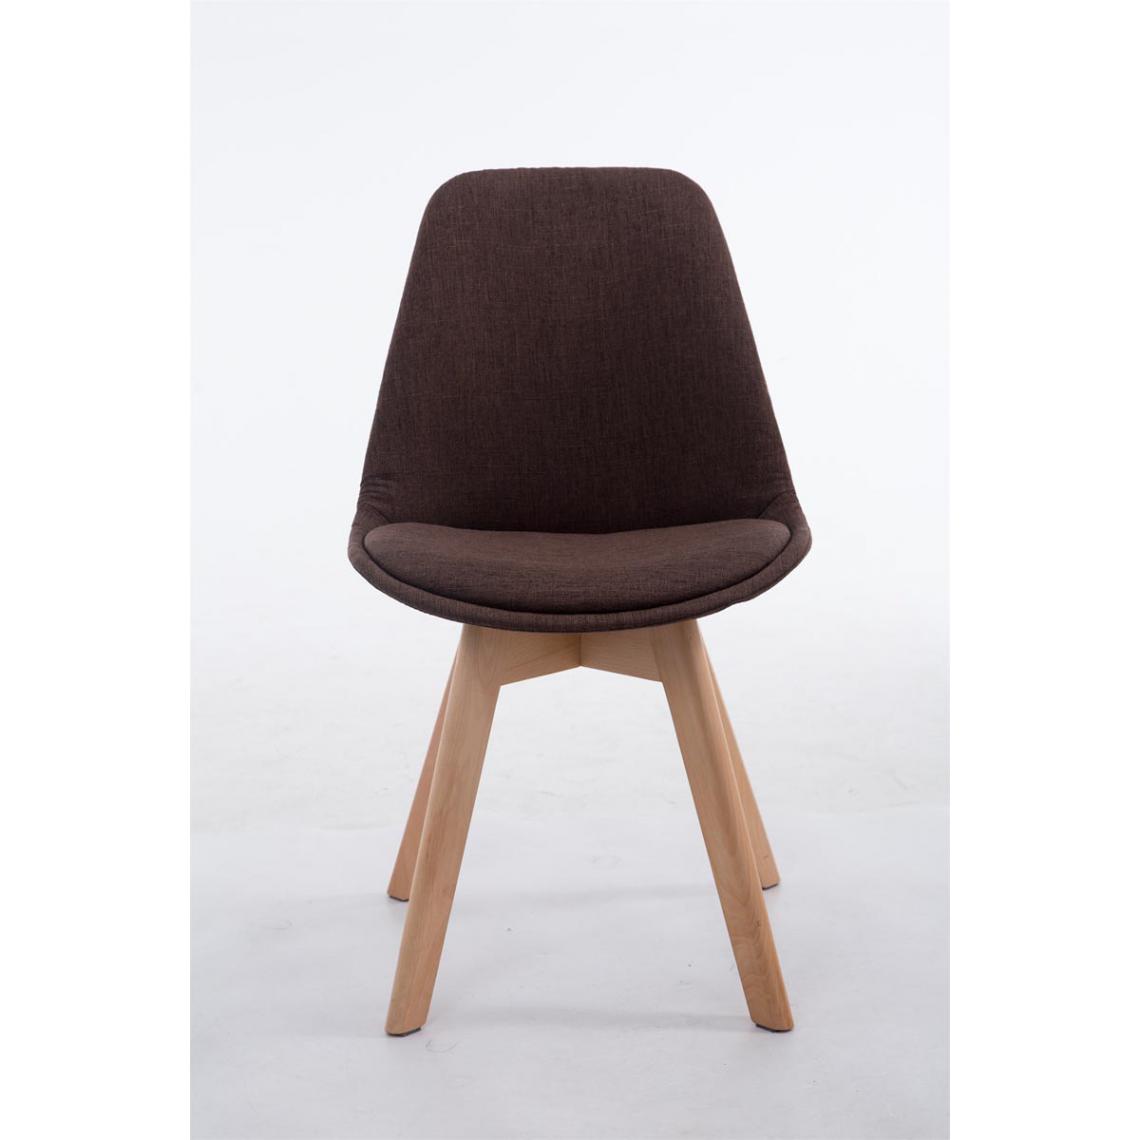 Icaverne - Moderne Chaise visiteur selection Lomé V2 tissu Natura couleur marron - Chaises